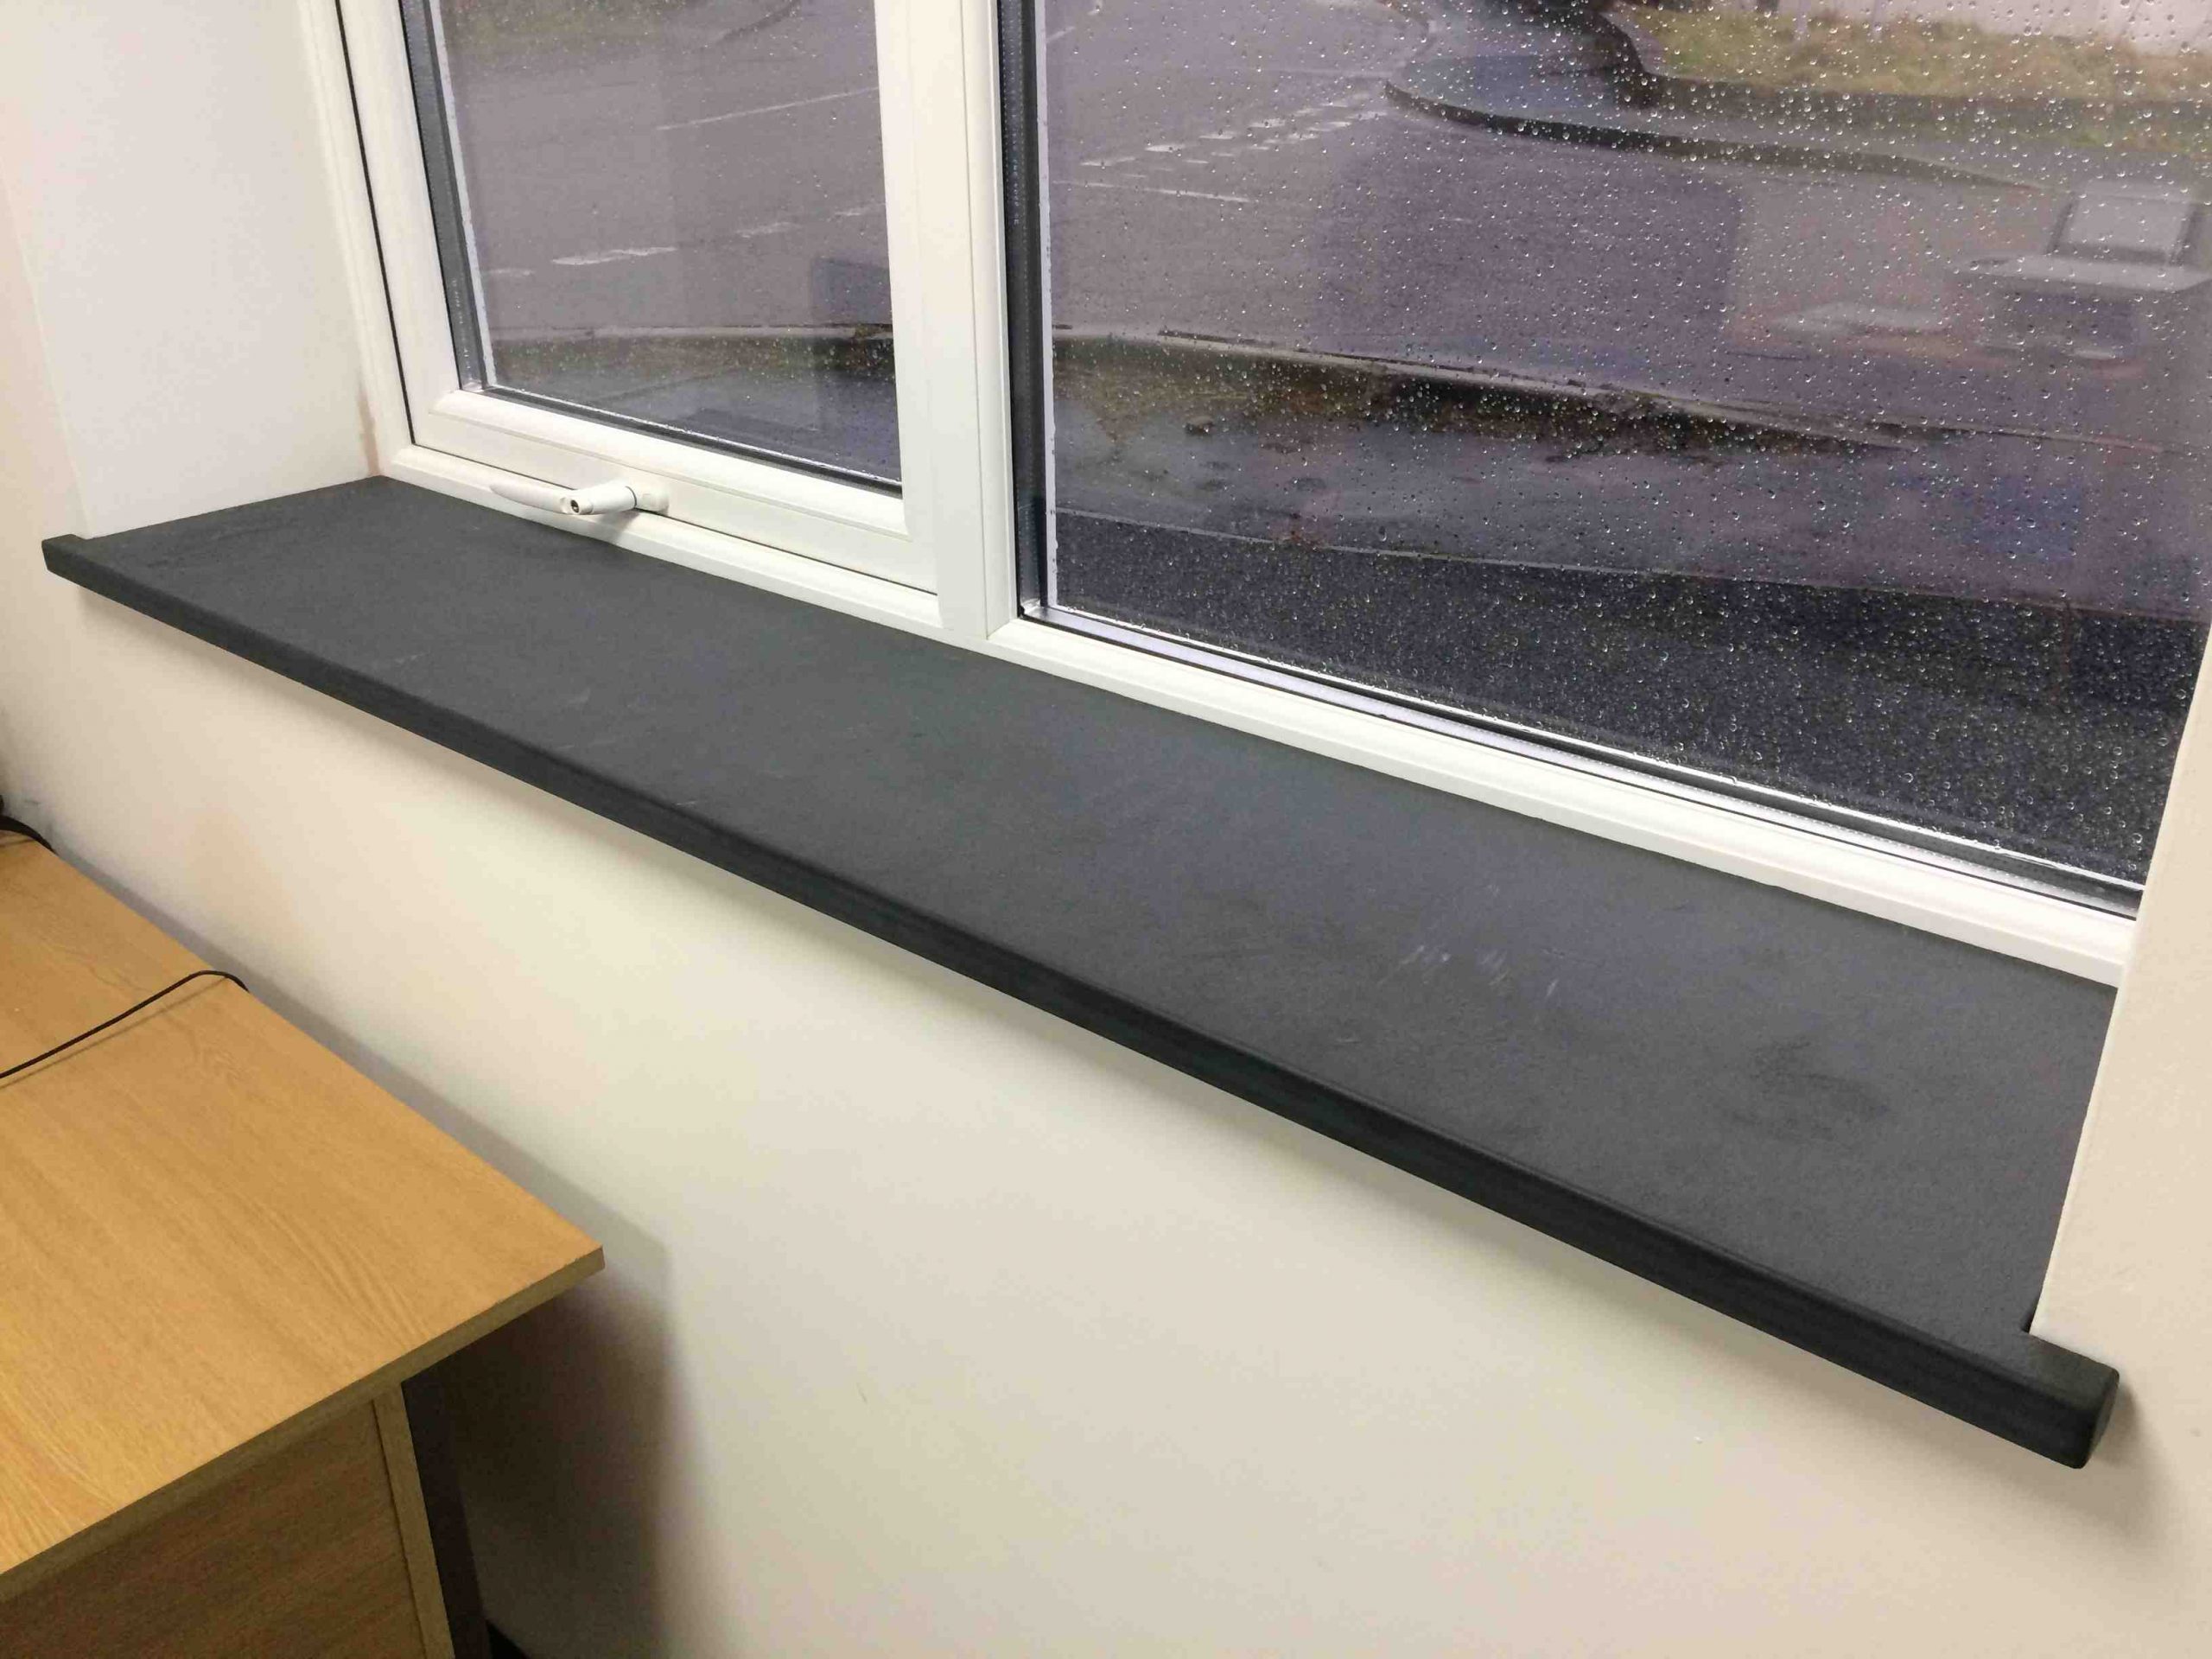 Comment remplacer un appui de fenêtre ?